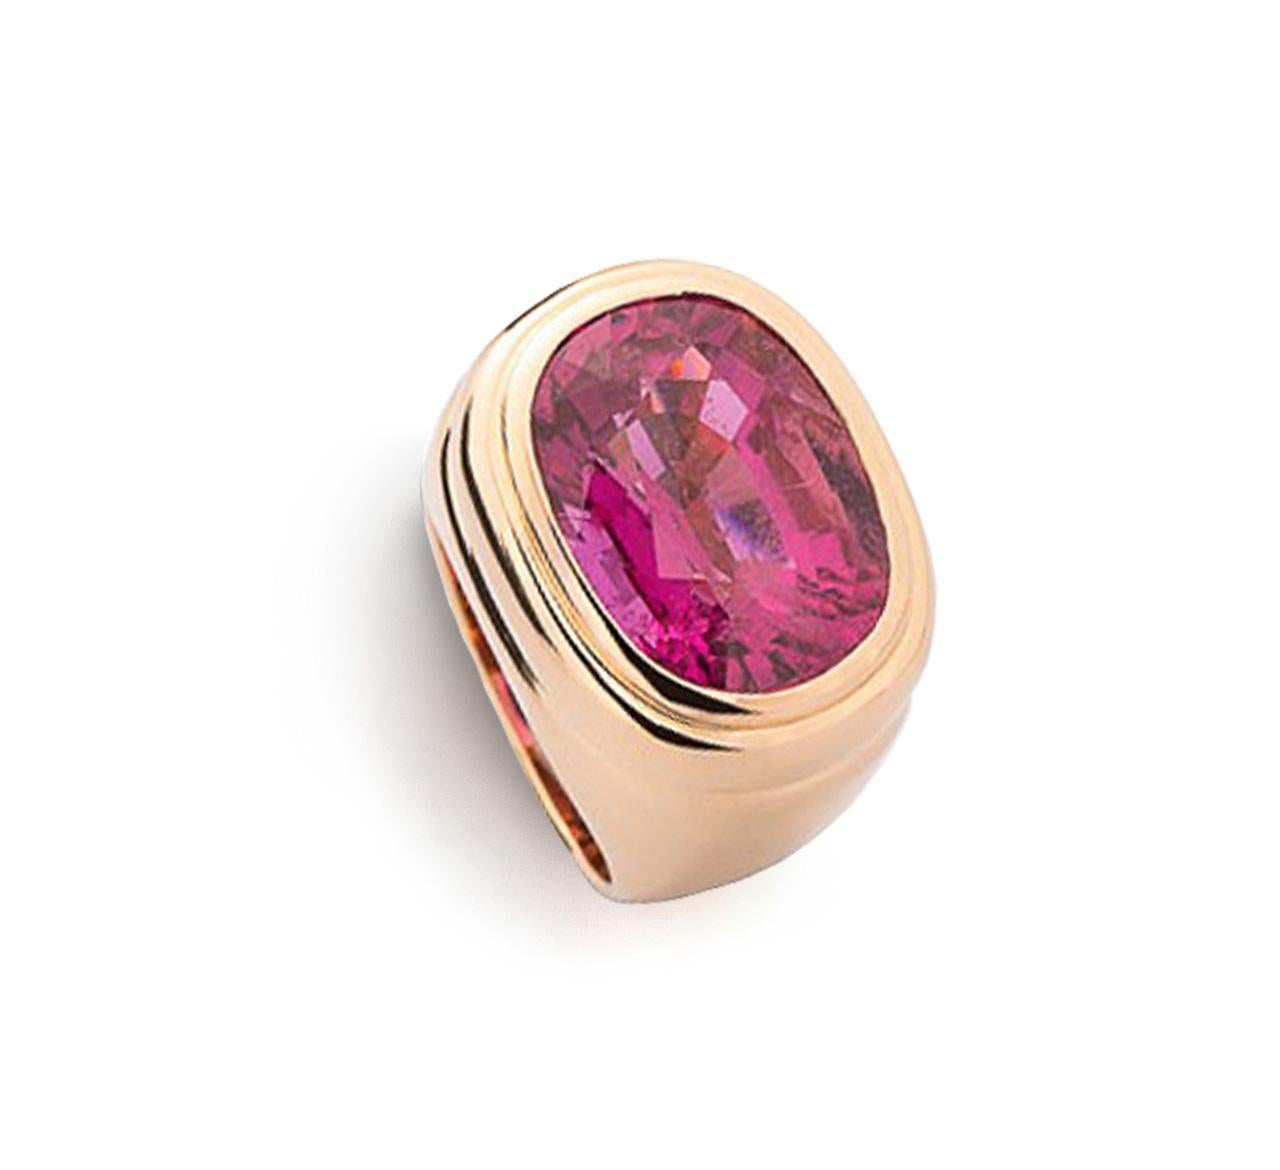 Sind Sie bereit, diesen wunderschönen Ring aus 18 Karat Roségold mit einem leuchtenden rosa Turmalin von 13,08 Karat zu tragen, der von Colleen B. Rosenblat entworfen wurde? 
Ringgröße: 55
